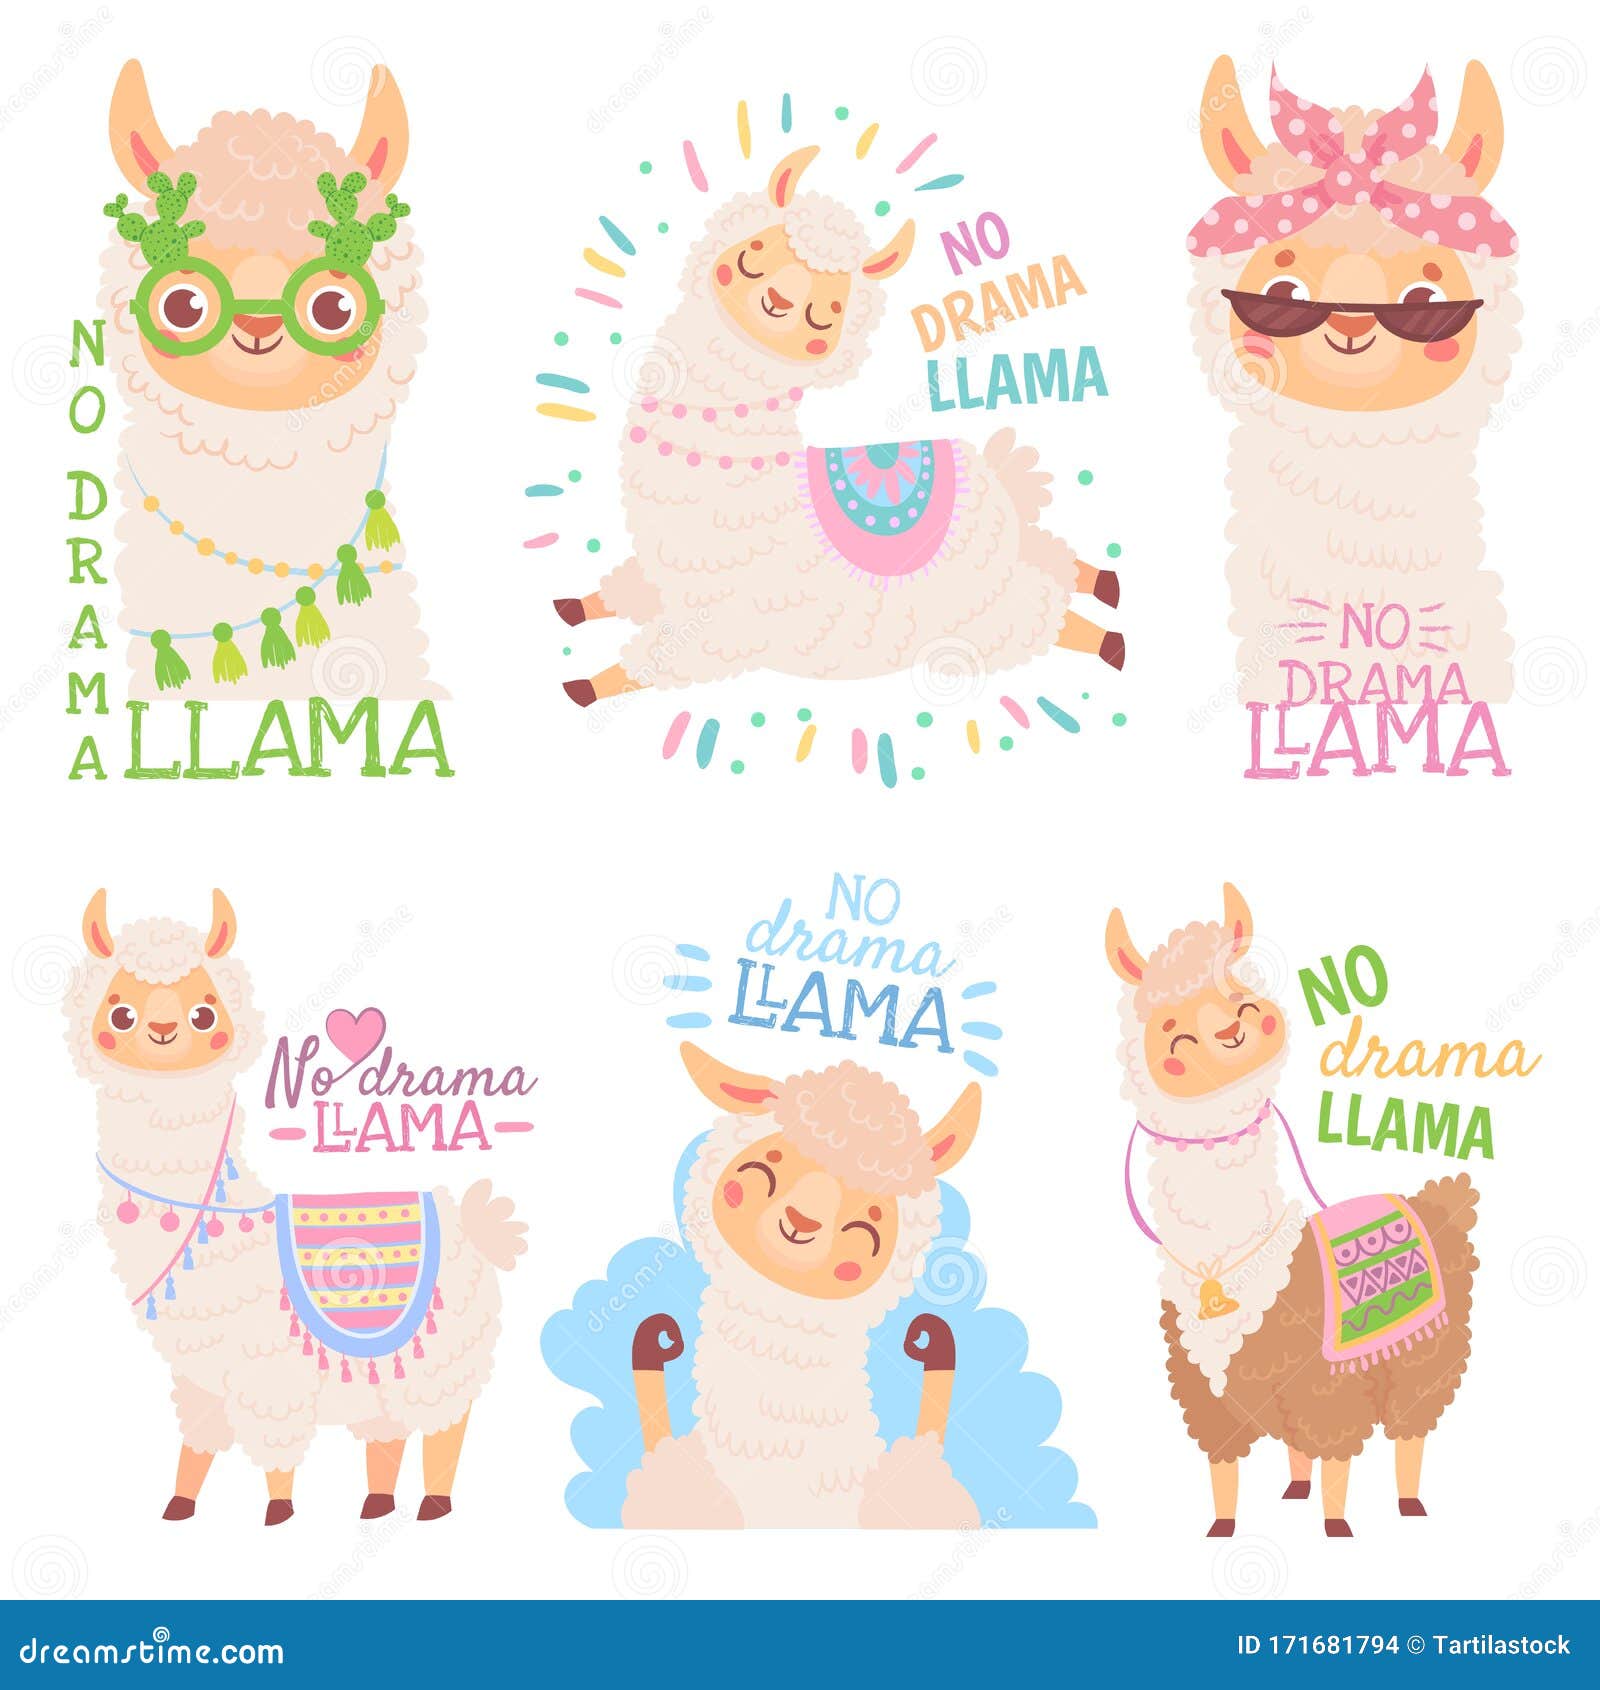 no drama llama. funny llamas or cute alpacas quote, happy mexican alpaca   set